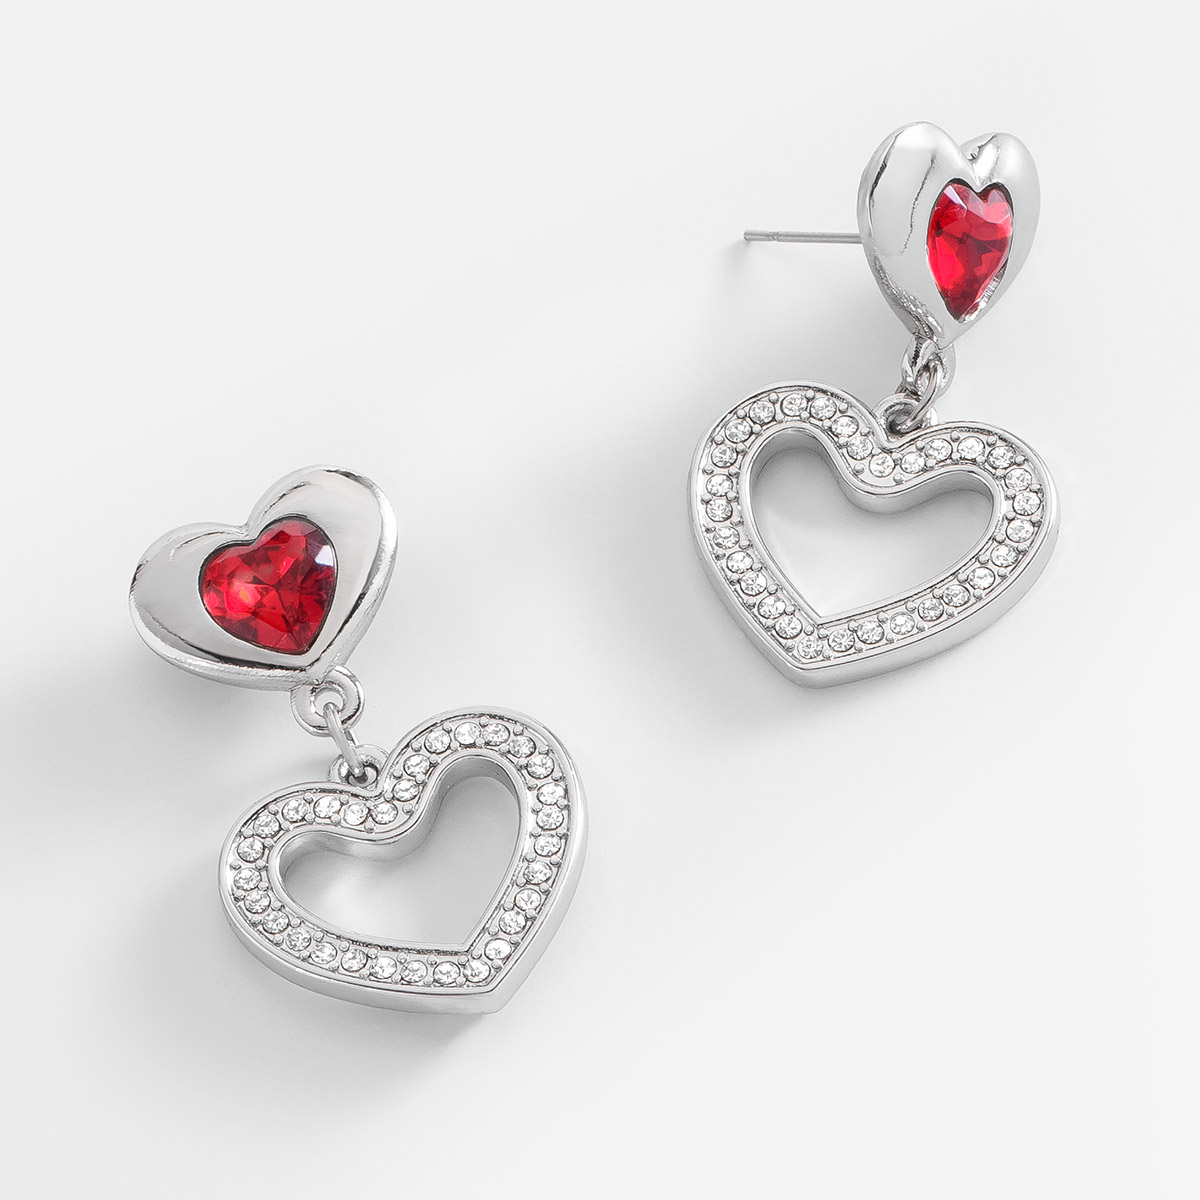 Aretes en forma de corazón, con poste, en baño de platino, con piedras en tono rojo y cristal.